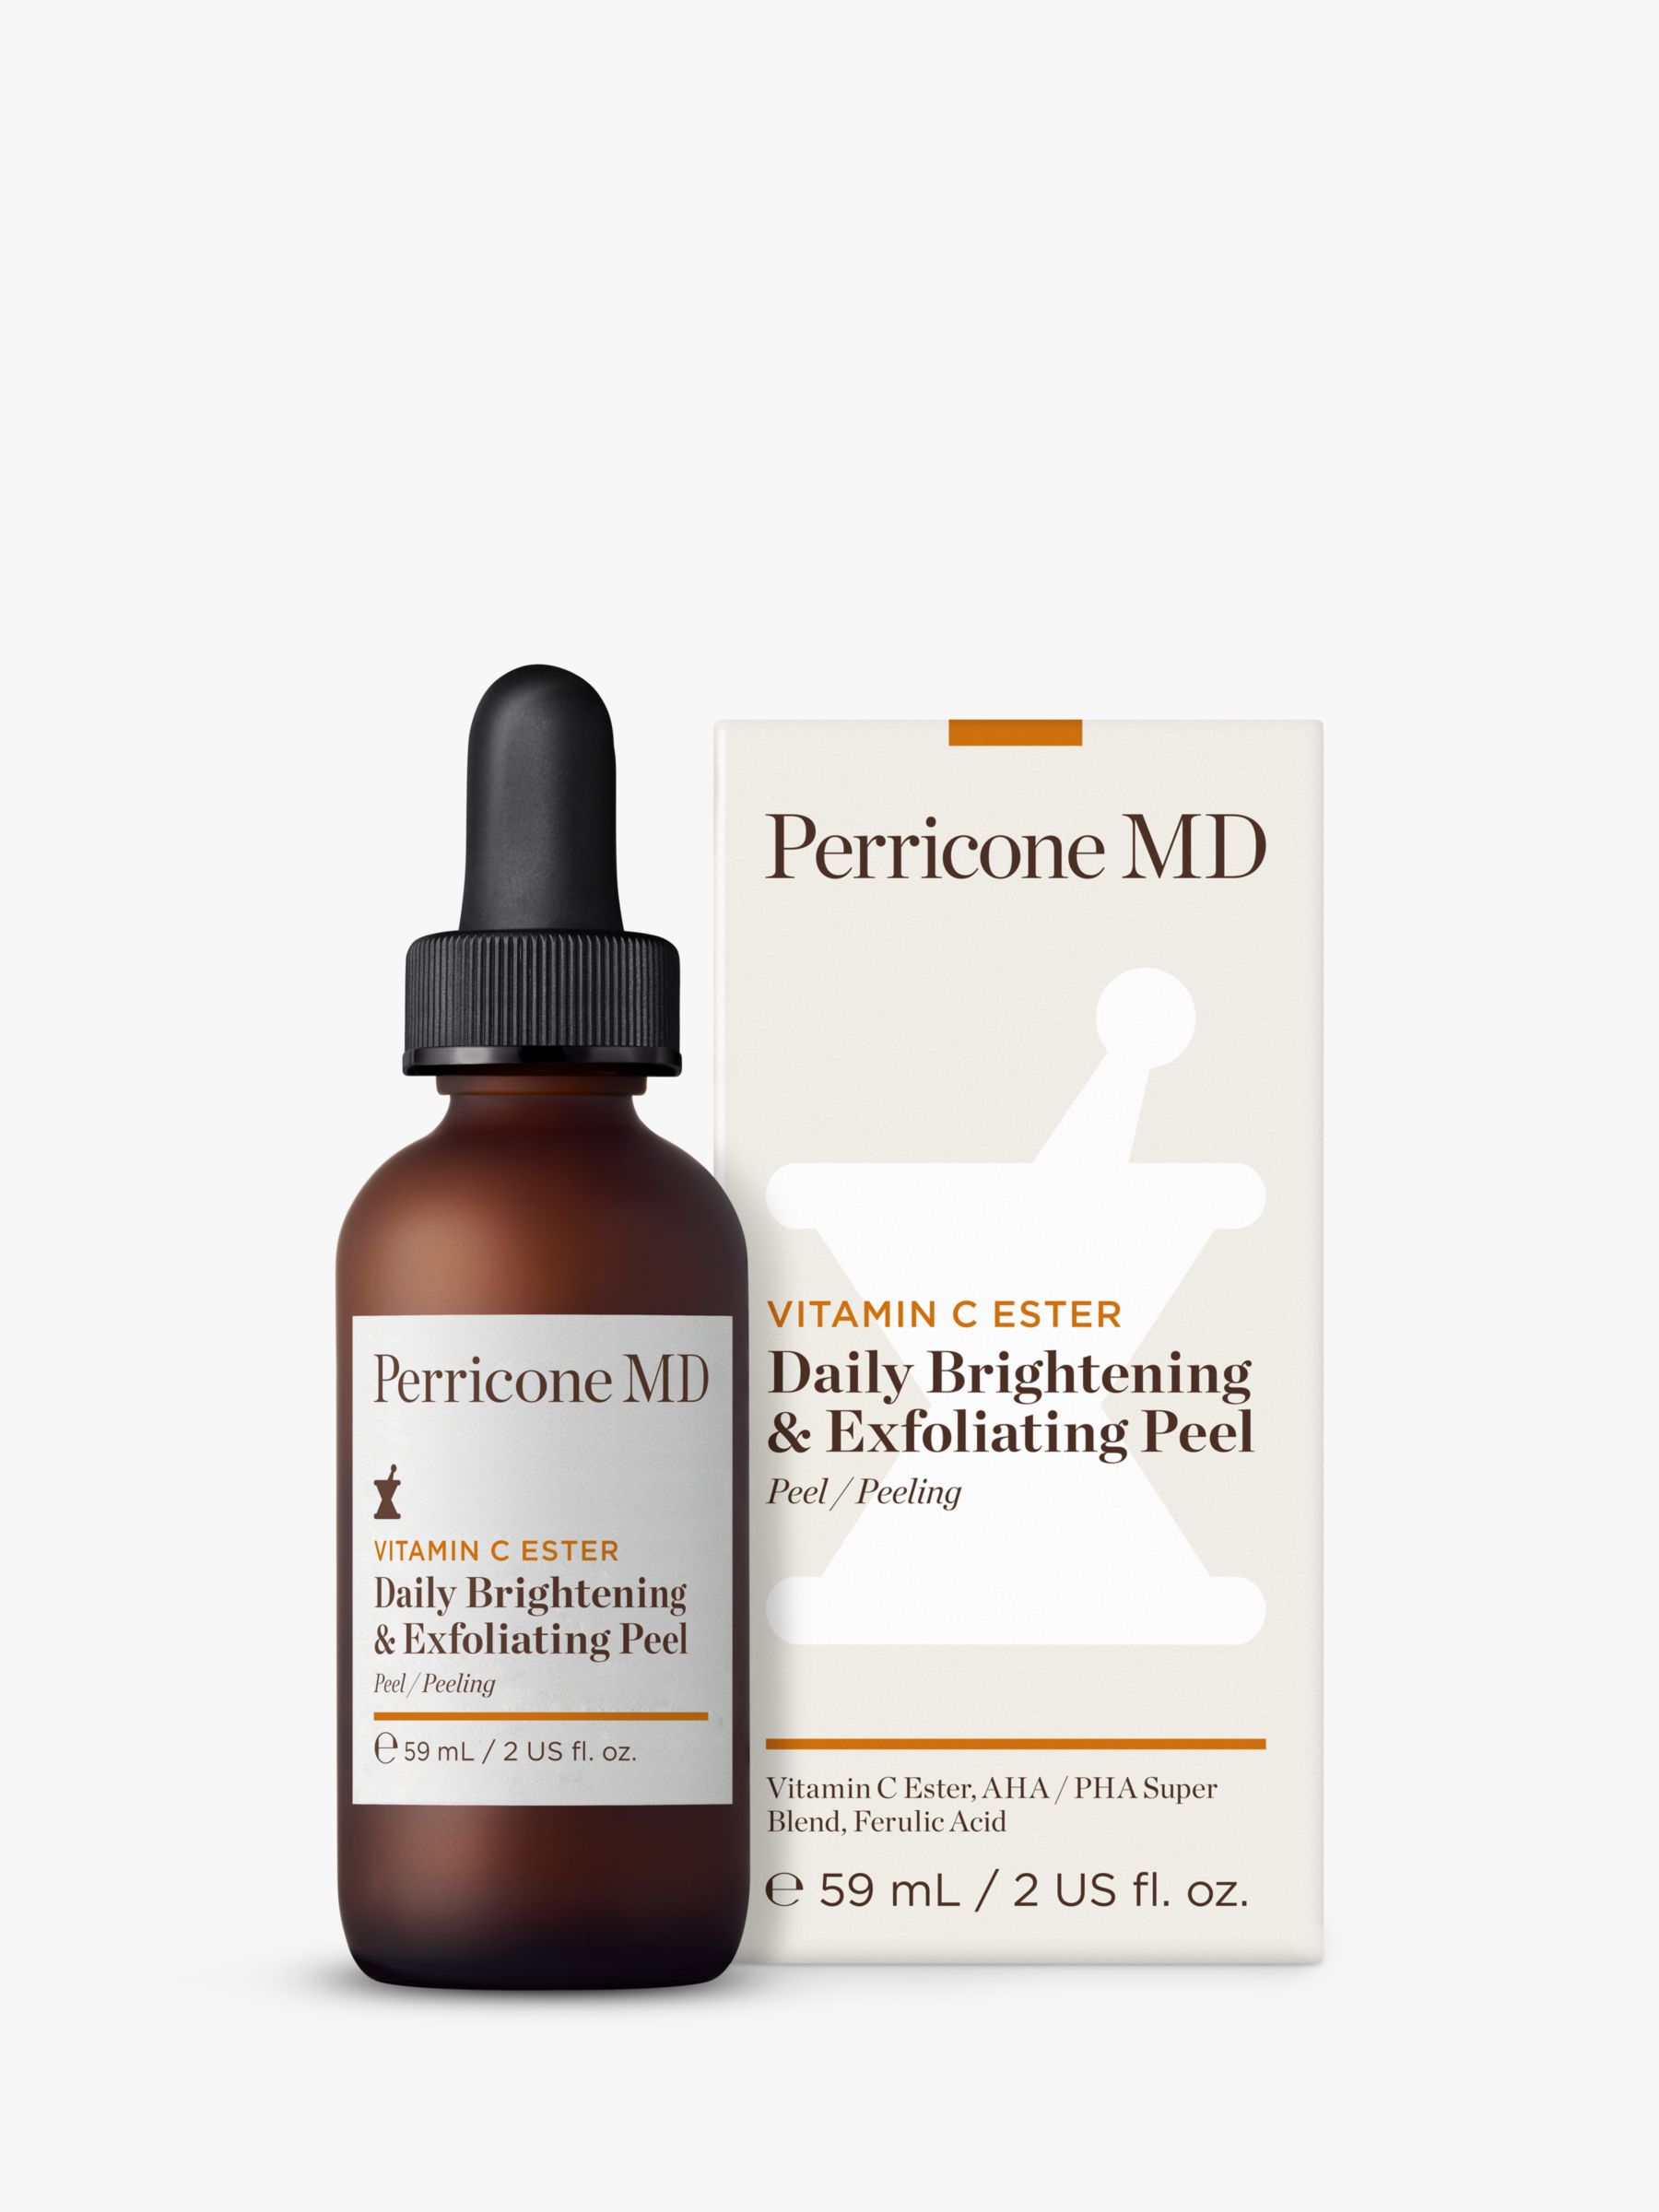 Perricone MD Vitamin C Ester Daily Brightening & Exfoliating Peel, 59ml 2